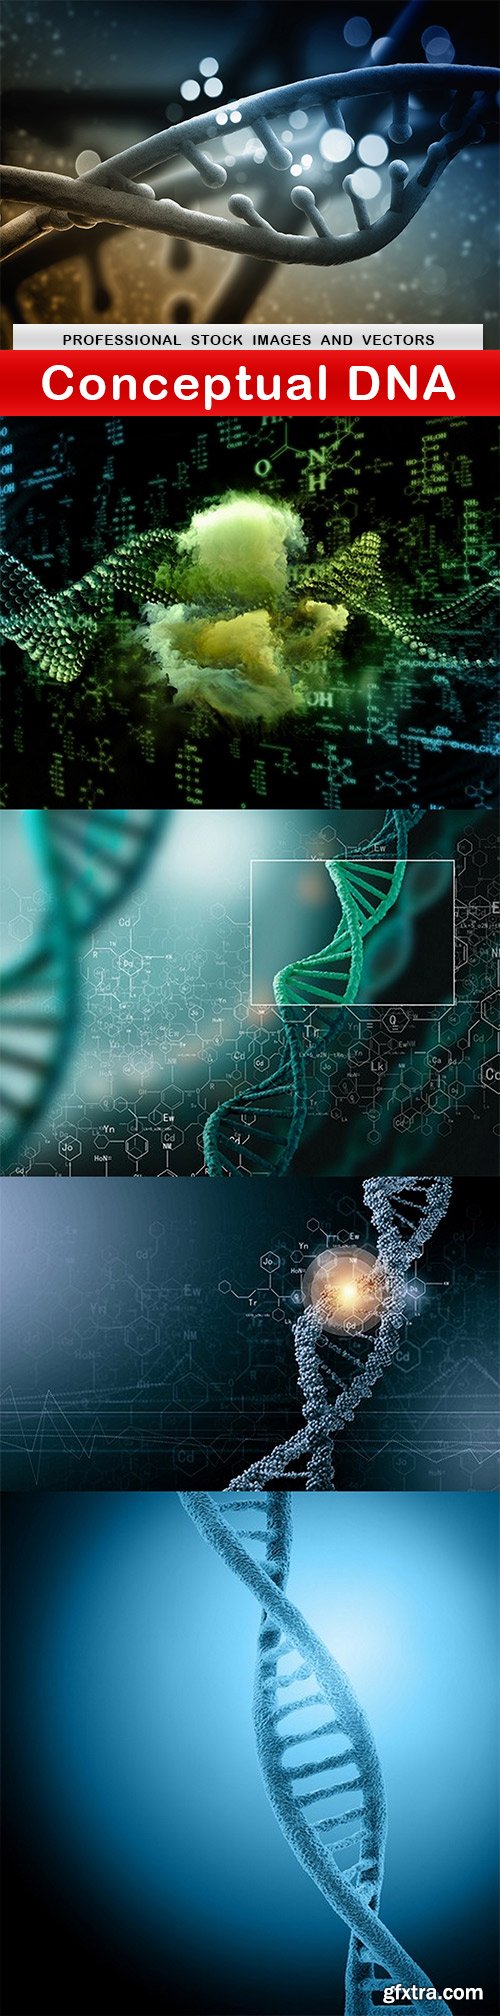 Conceptual DNA - 5 UHQ JPEG